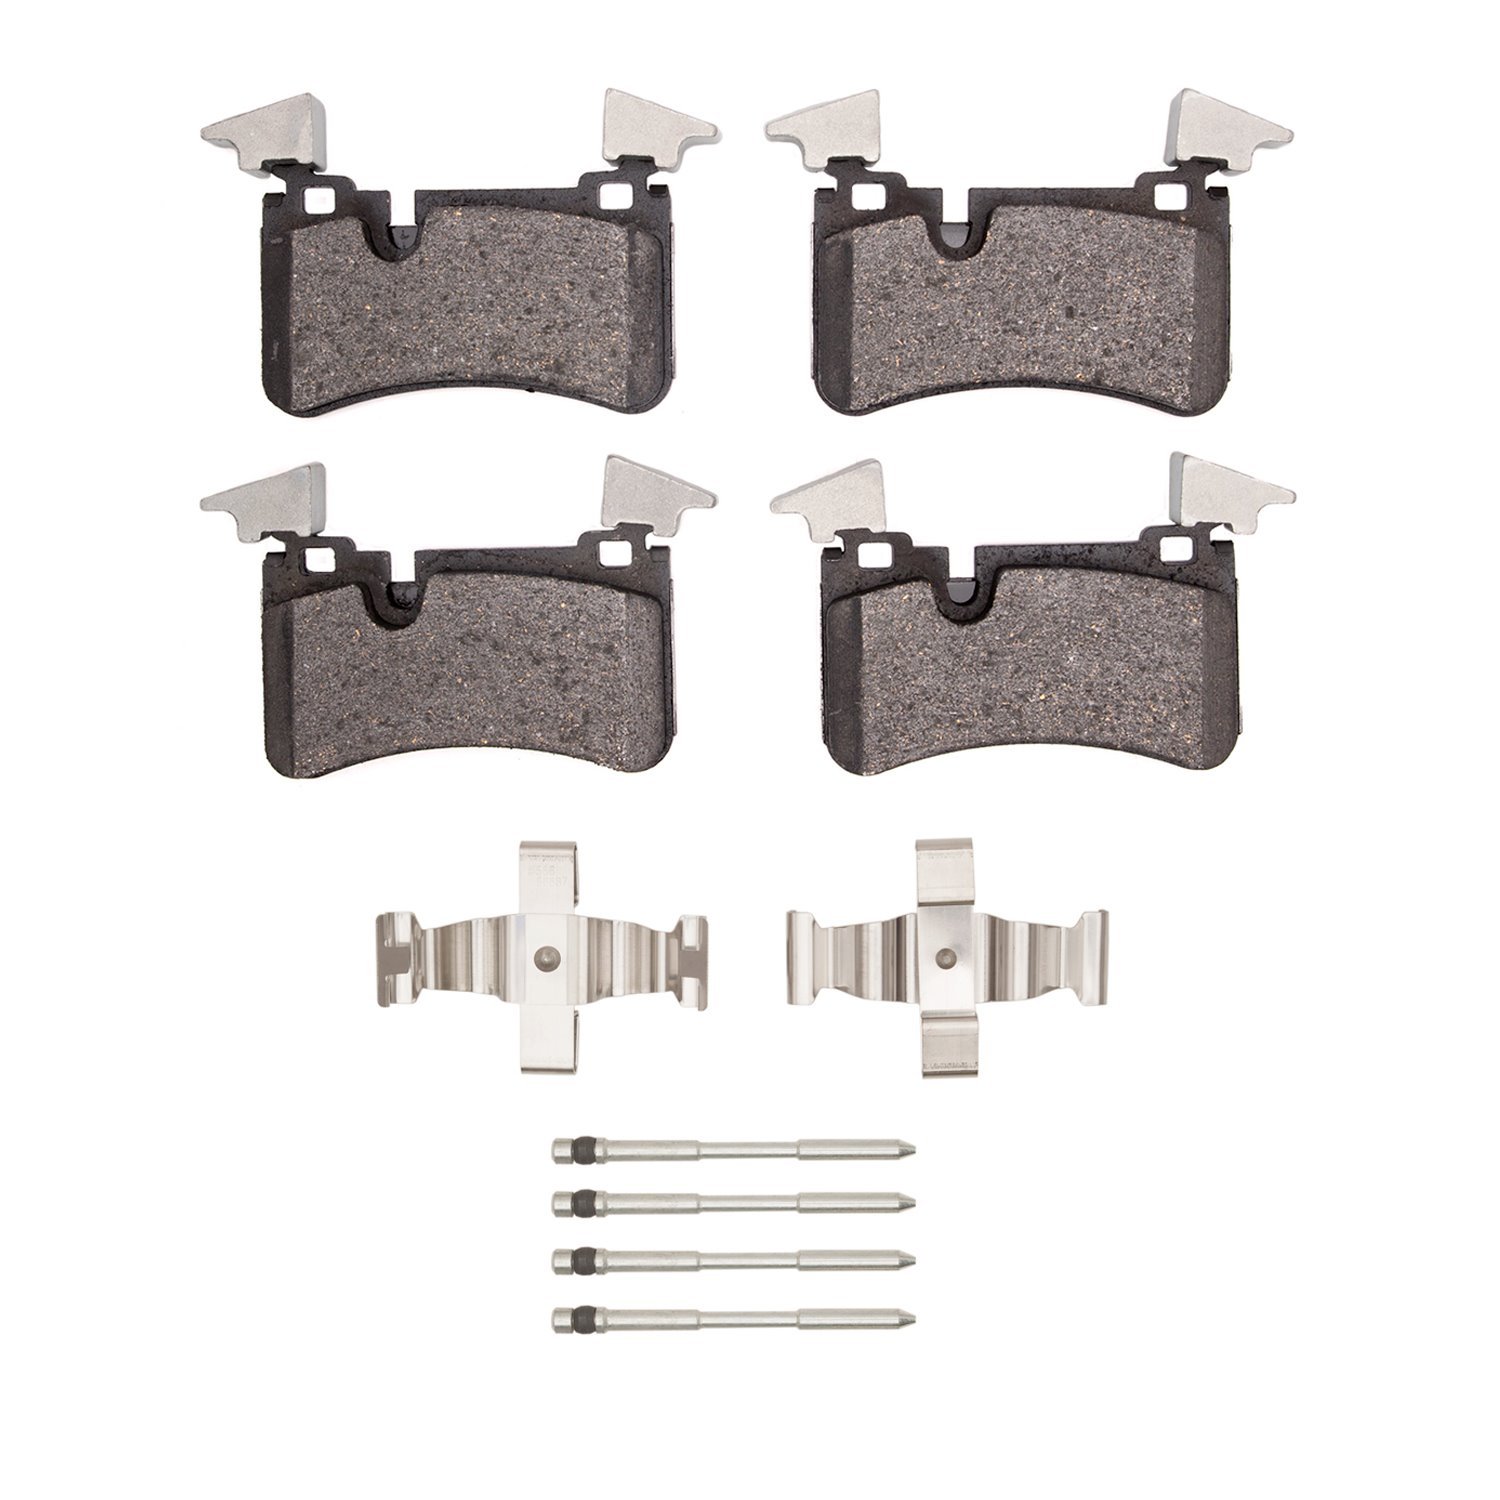 1310-1373-01 3000-Series Ceramic Brake Pads & Hardware Kit, 2007-2013 Mercedes-Benz, Position: Rear